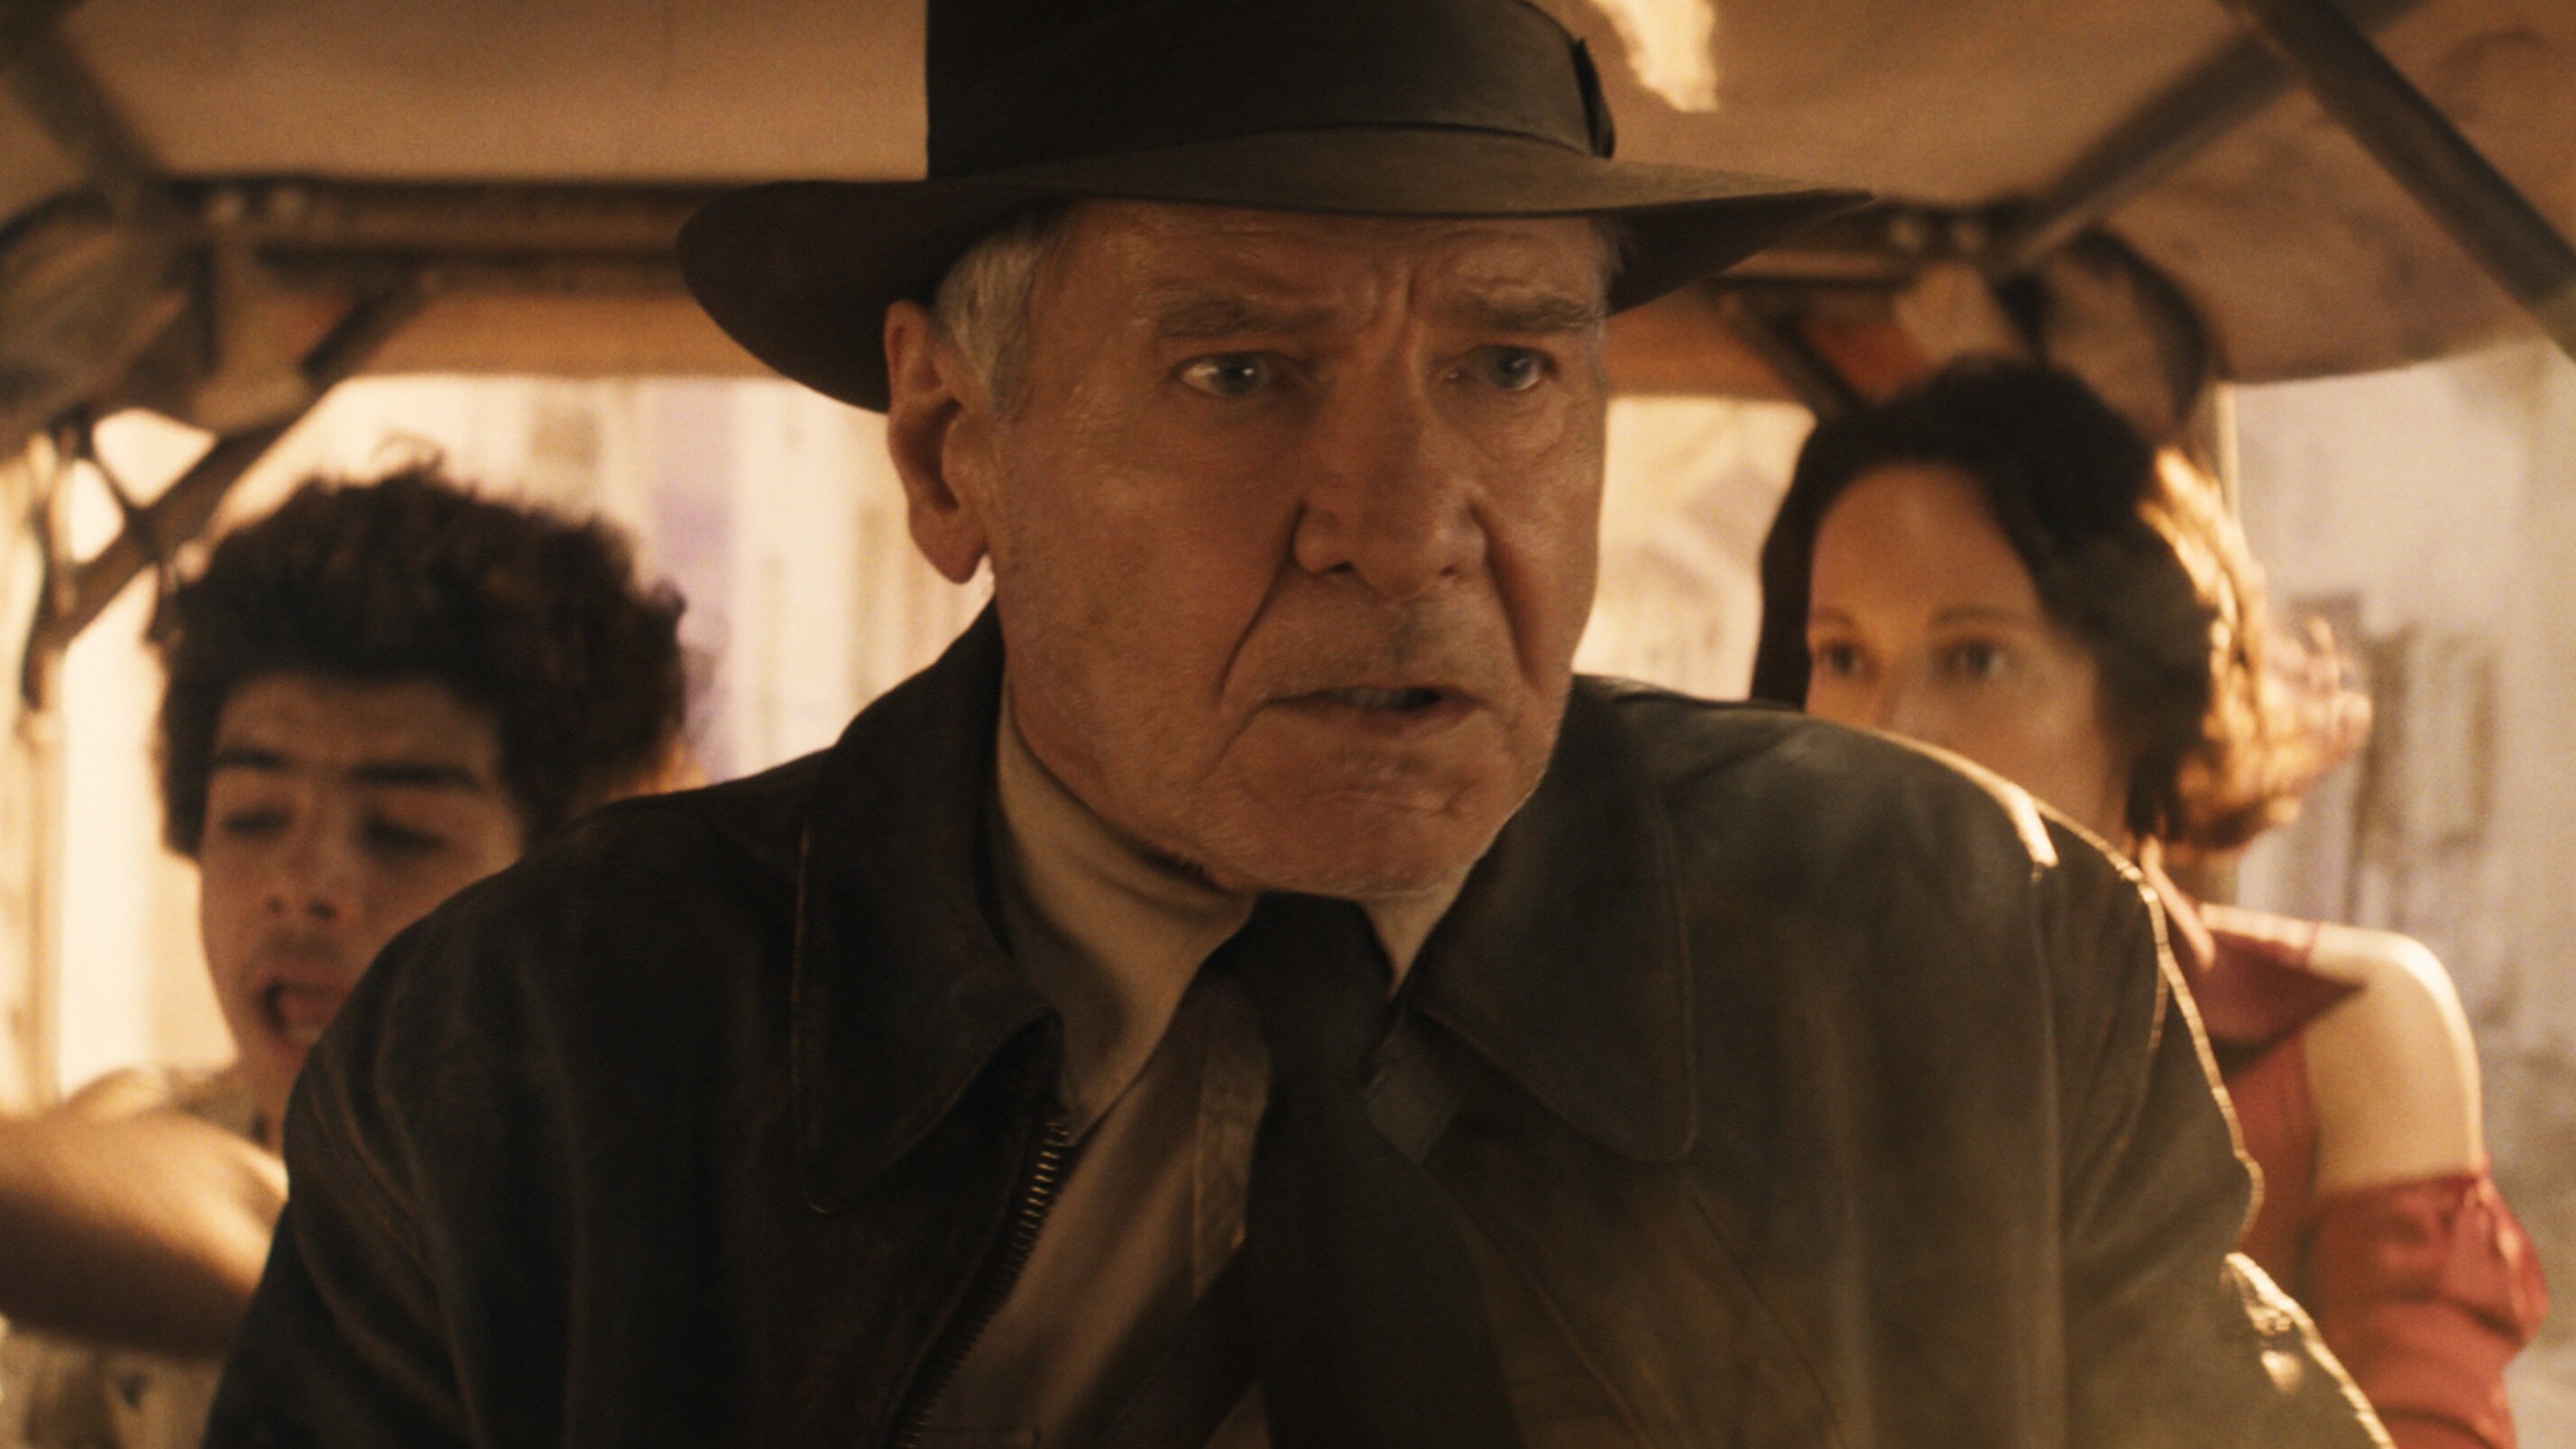 Qual é a duração de 'Indiana Jones e a Relíquia do Destino'?